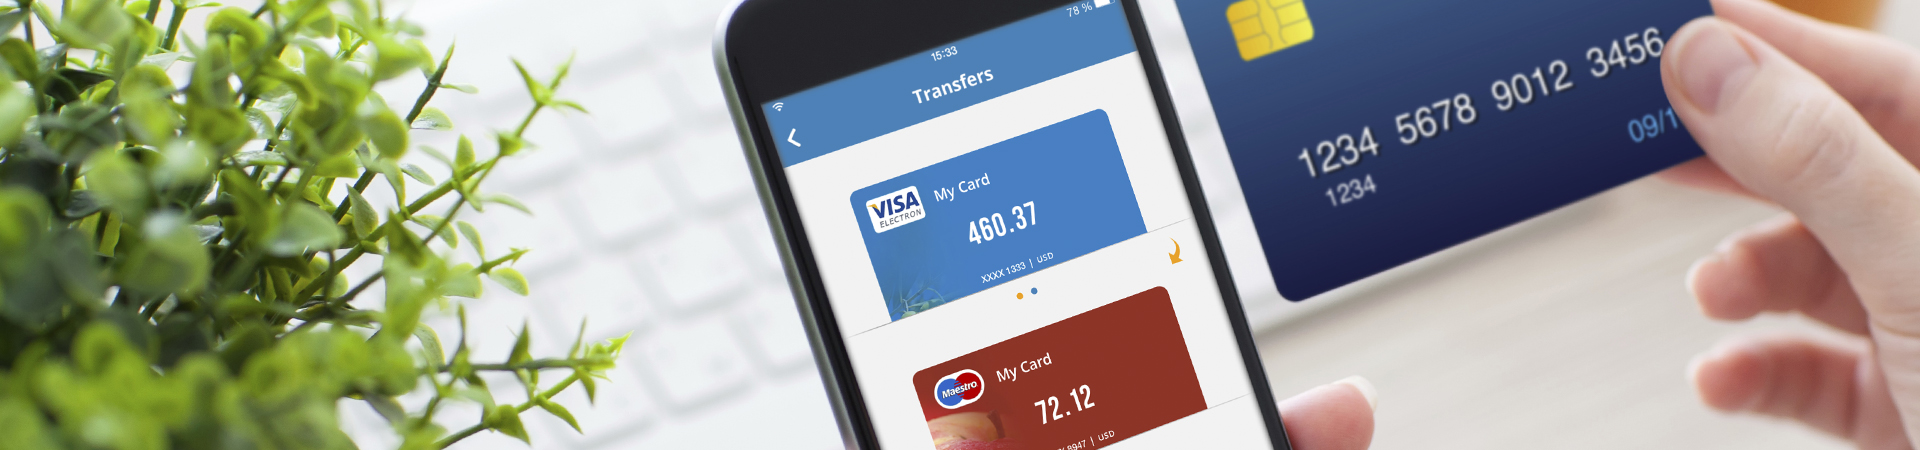 Entwicklung einer preisgekrönten App für Mobile-Banking